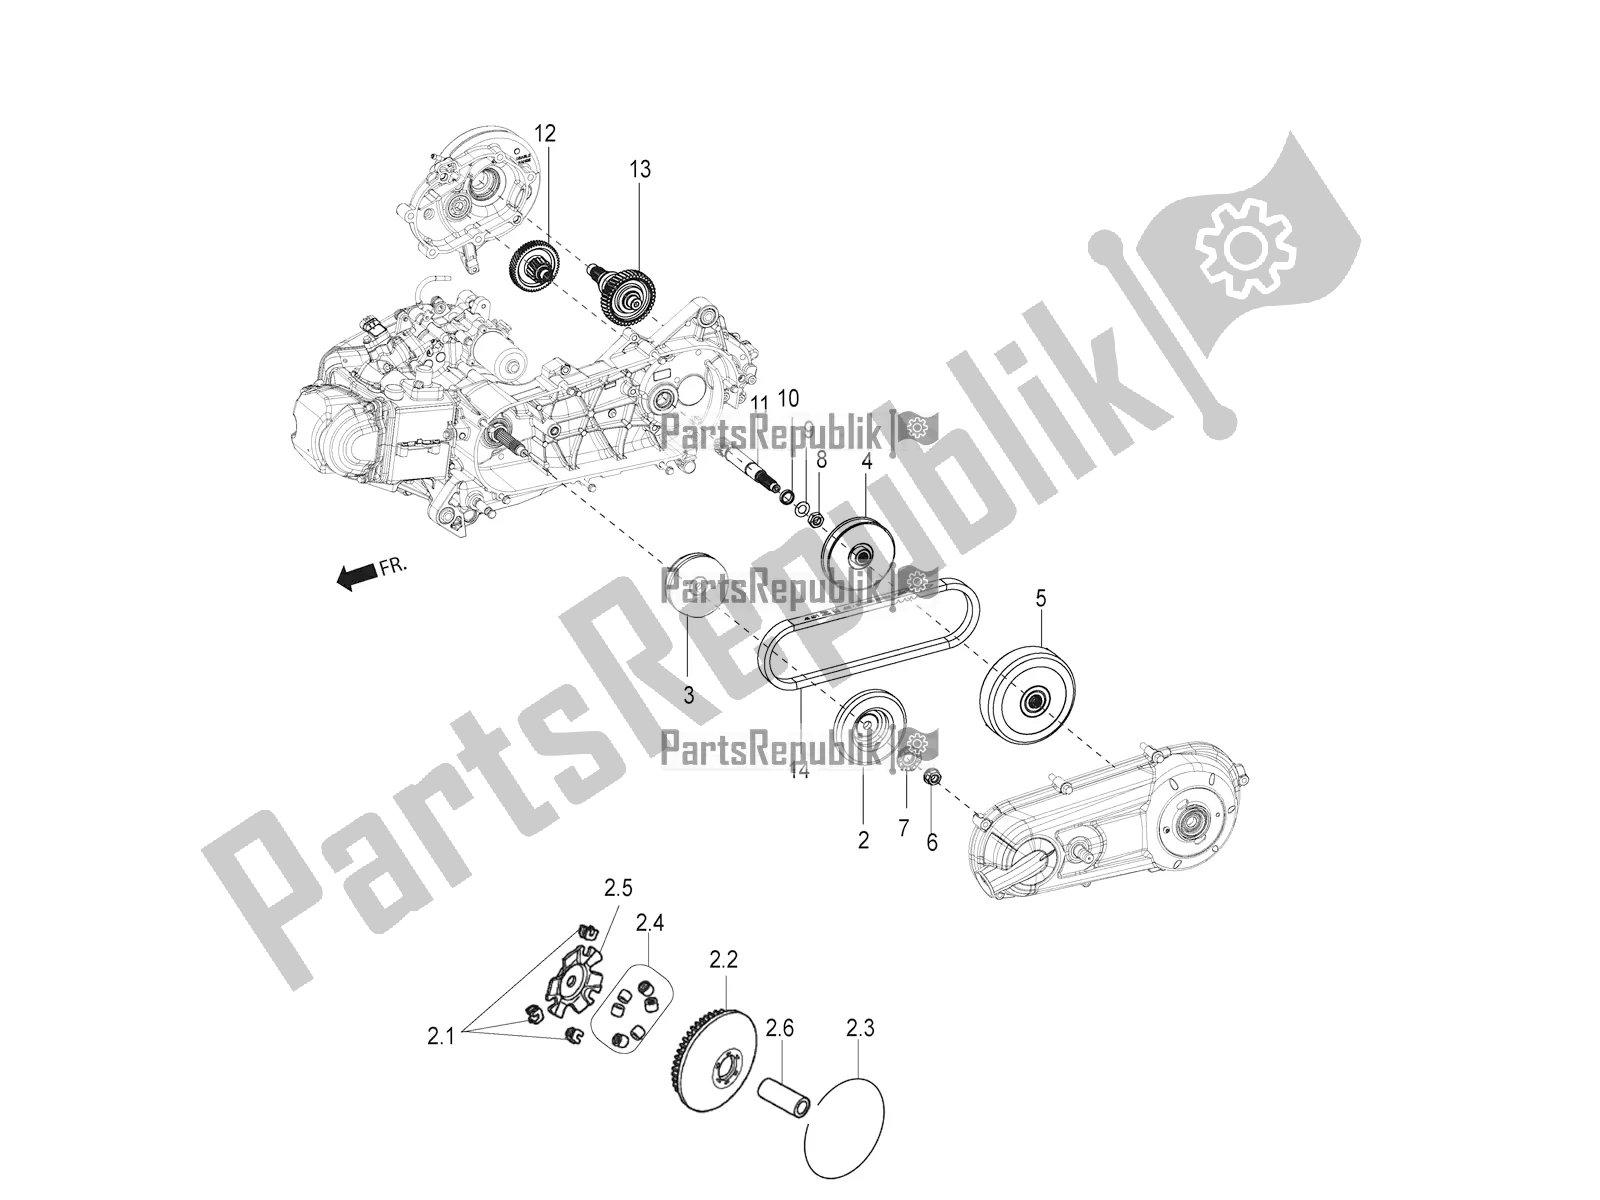 Alle onderdelen voor de Transmissie-koppeling van de Aprilia SR Motard 150 ABS Racer Carb. Latam 2020